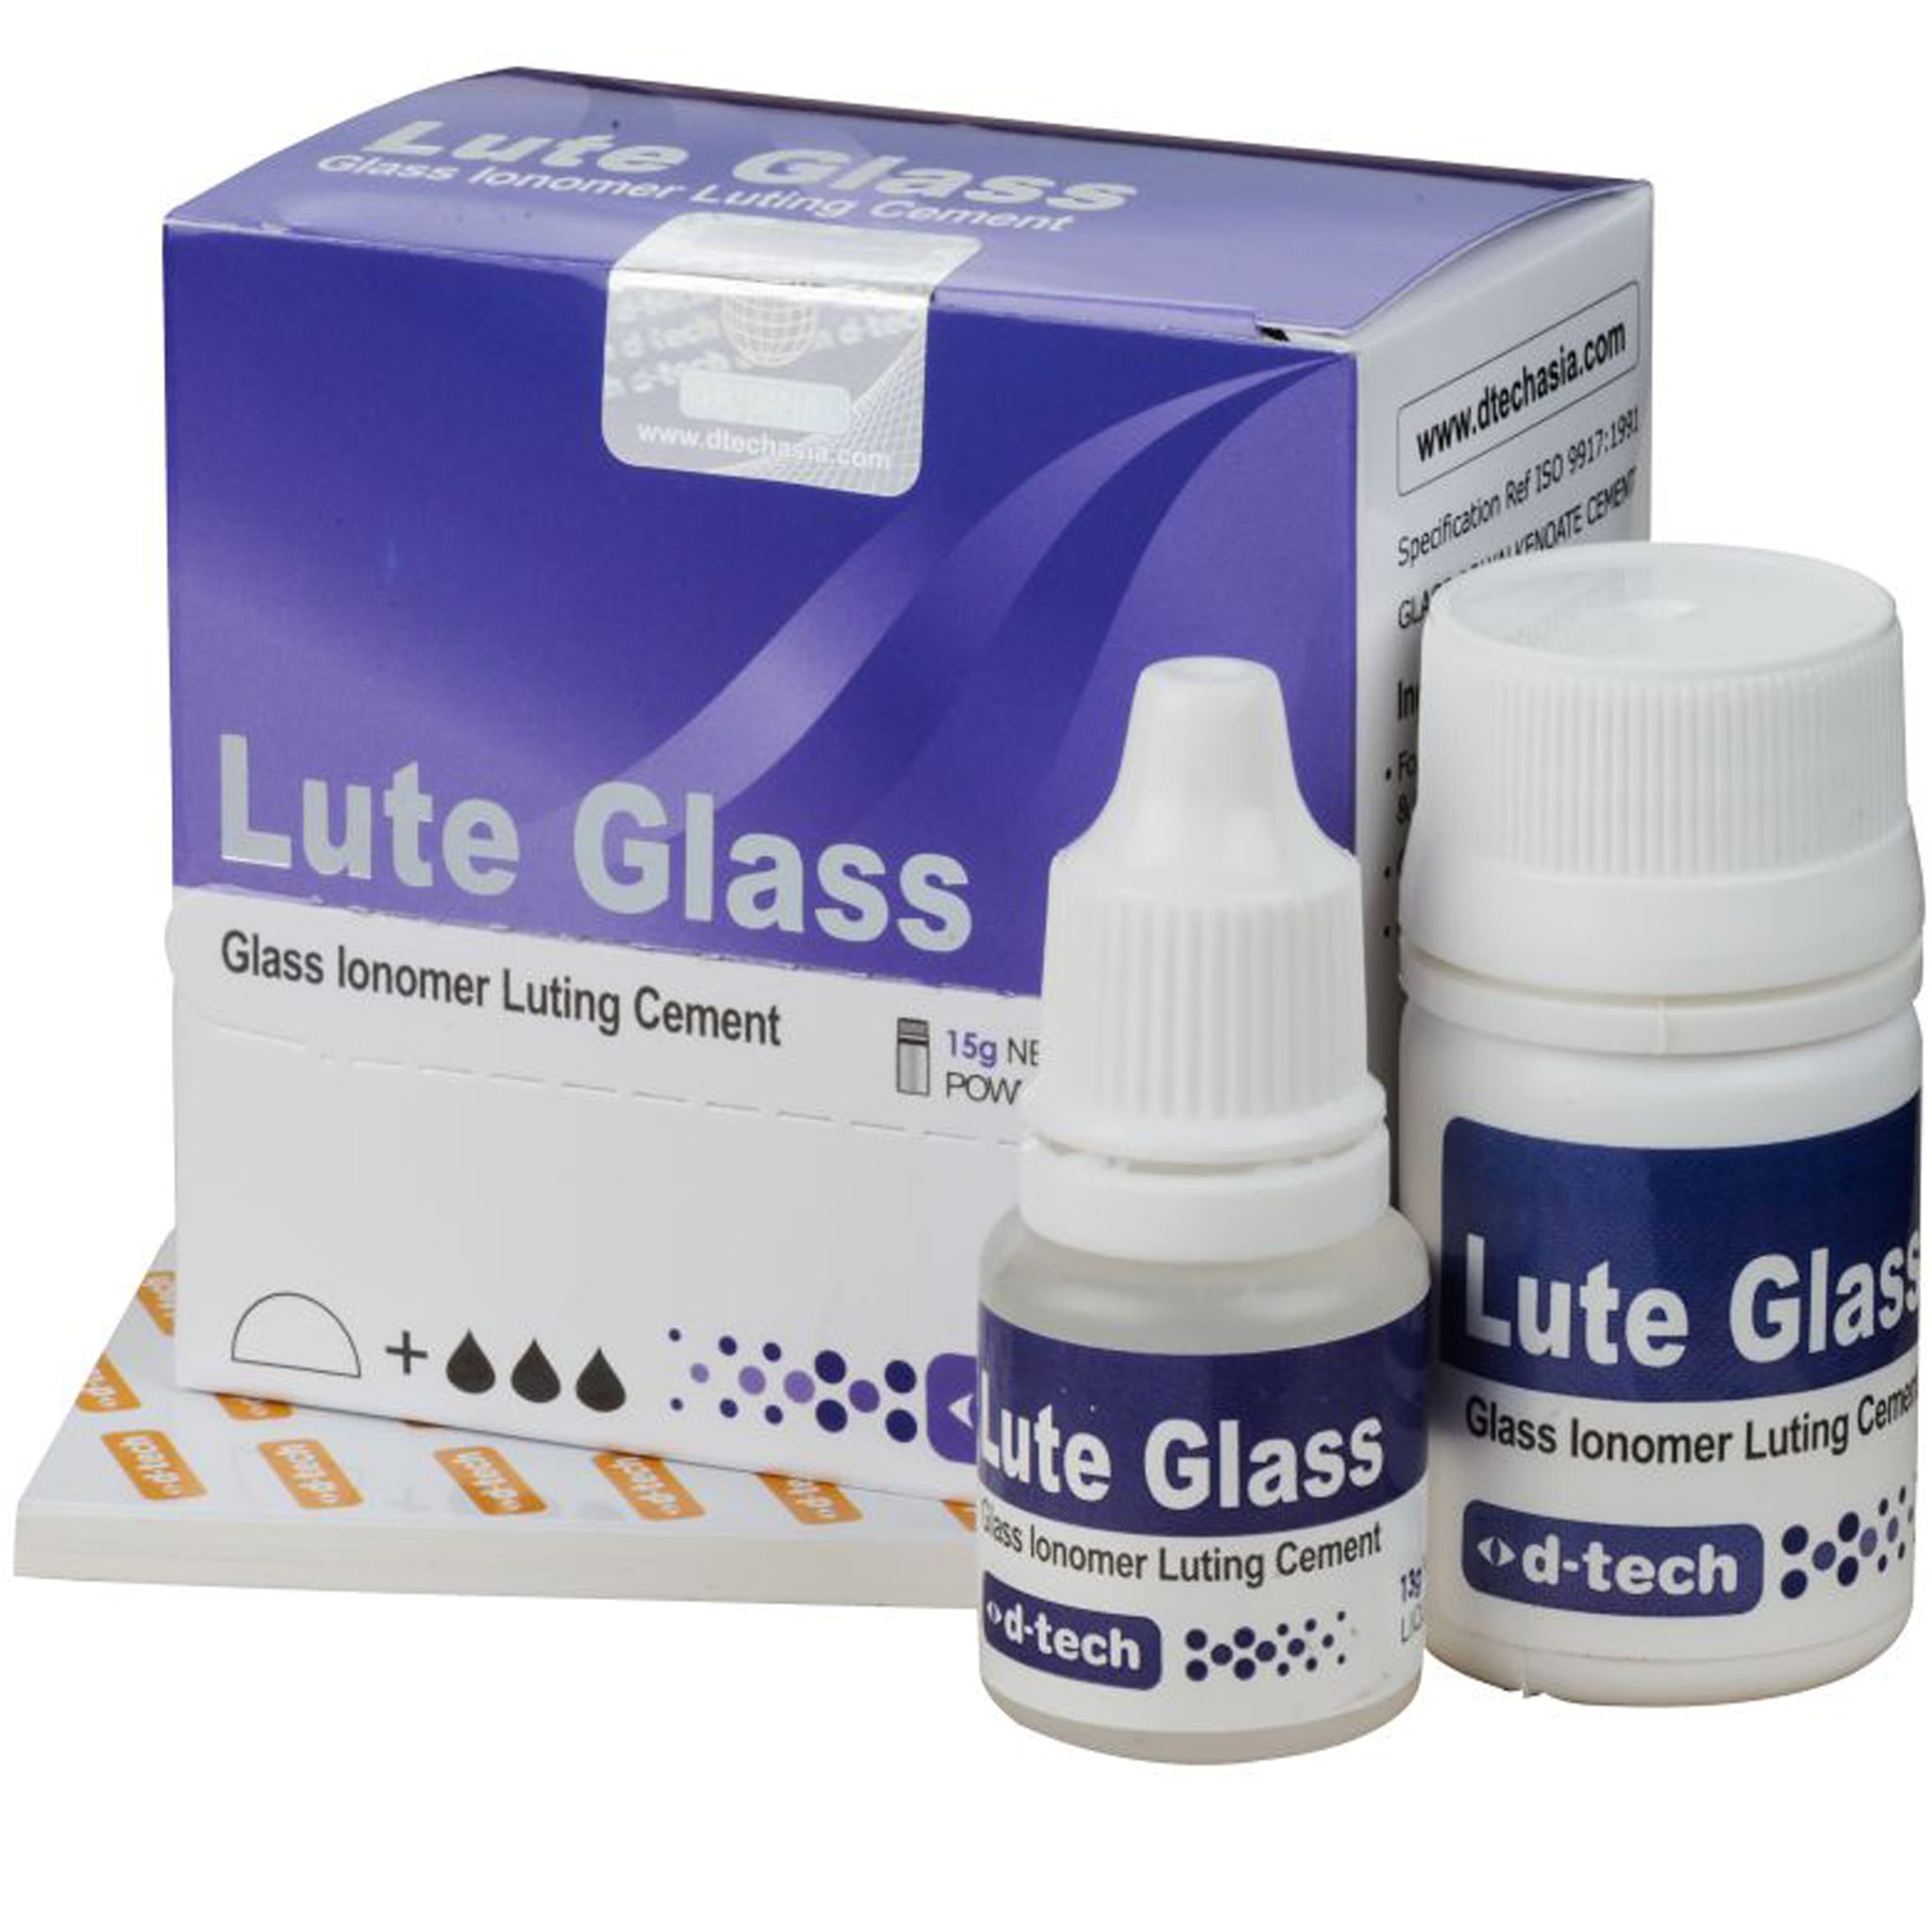 D-Tech Lute Glass GIC